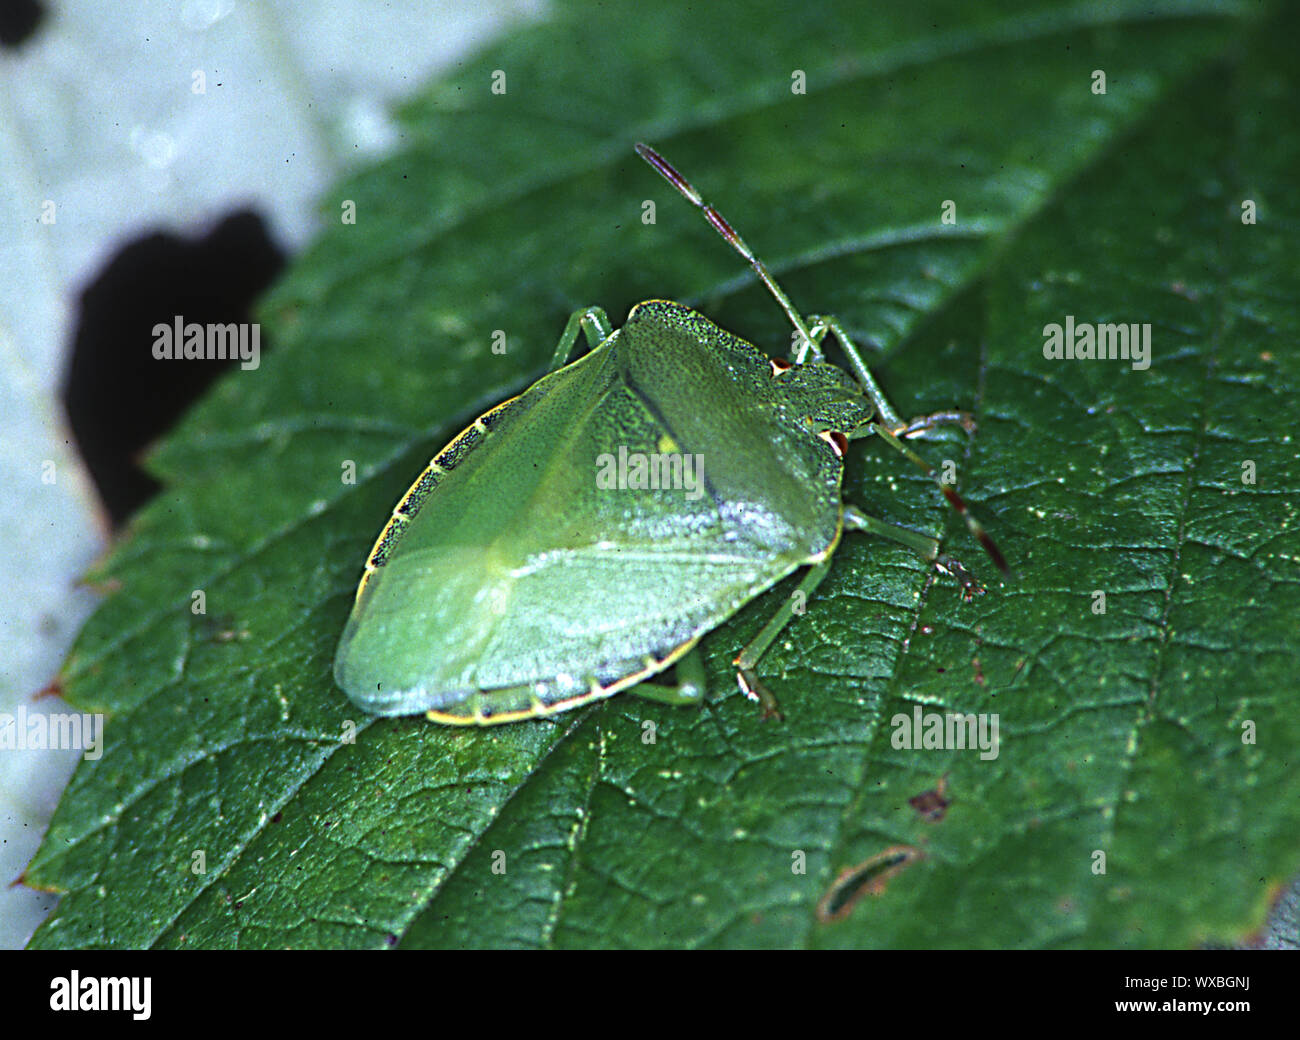 Bug en hojas de árbol verde Foto de stock